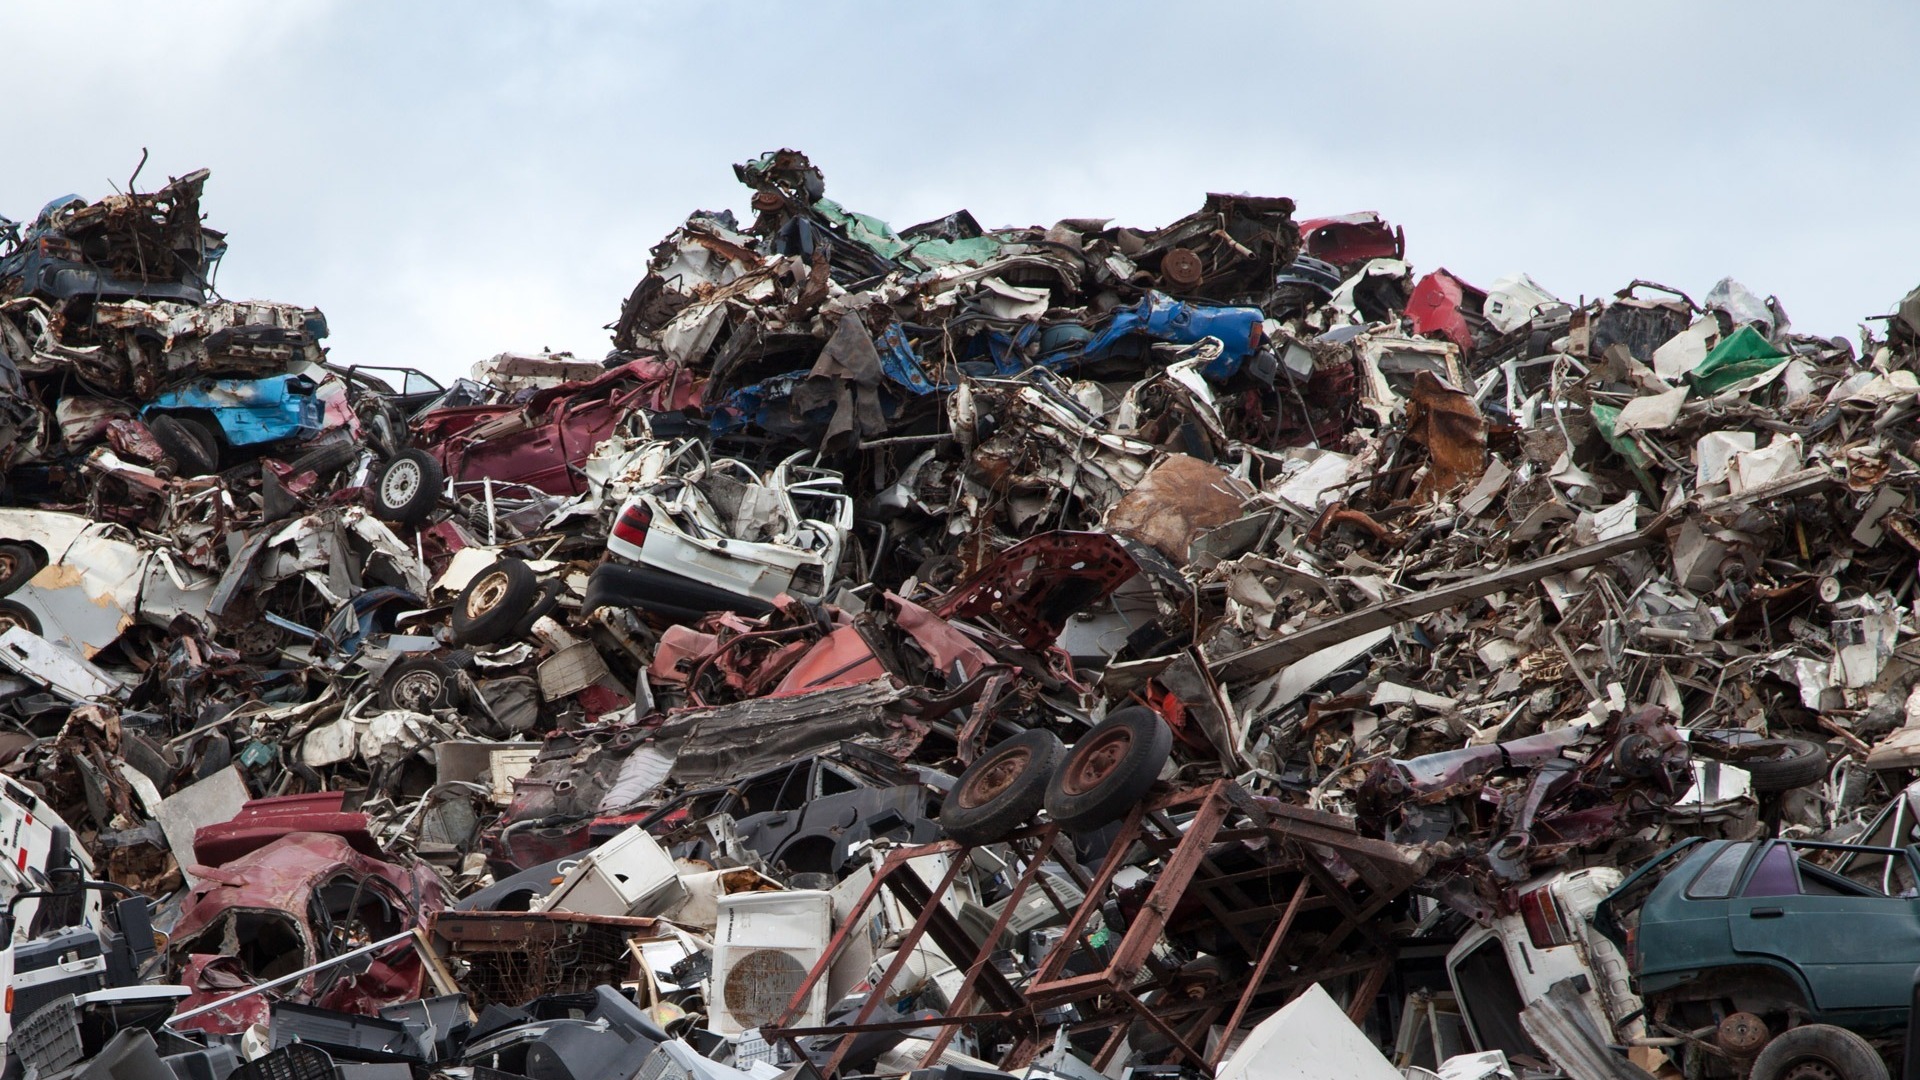 РЭО займется решением проблемы переполненных мусорных полигонов Липецка